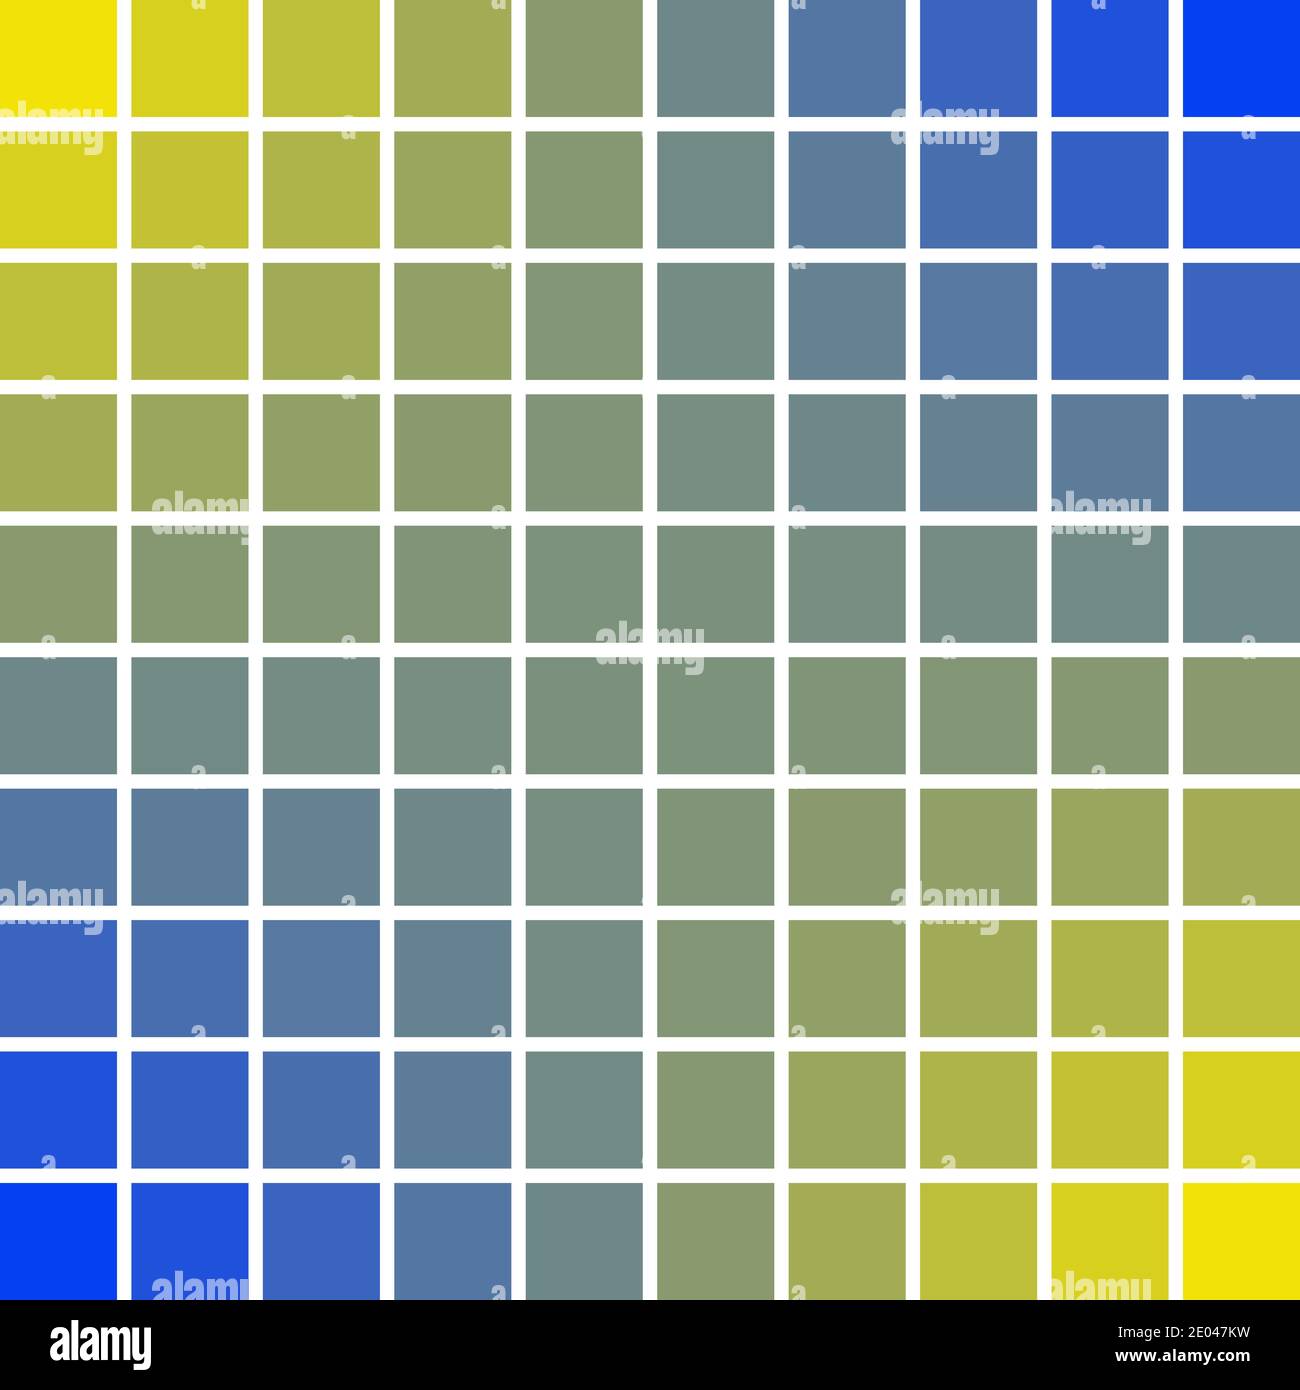 Pannelli pixel art quadrati 10 x 10 colore blu e giallo delle onde del sole  e del mare, illustrazione vettoriale pixel art colori pace buona e  prosperità Immagine e Vettoriale - Alamy